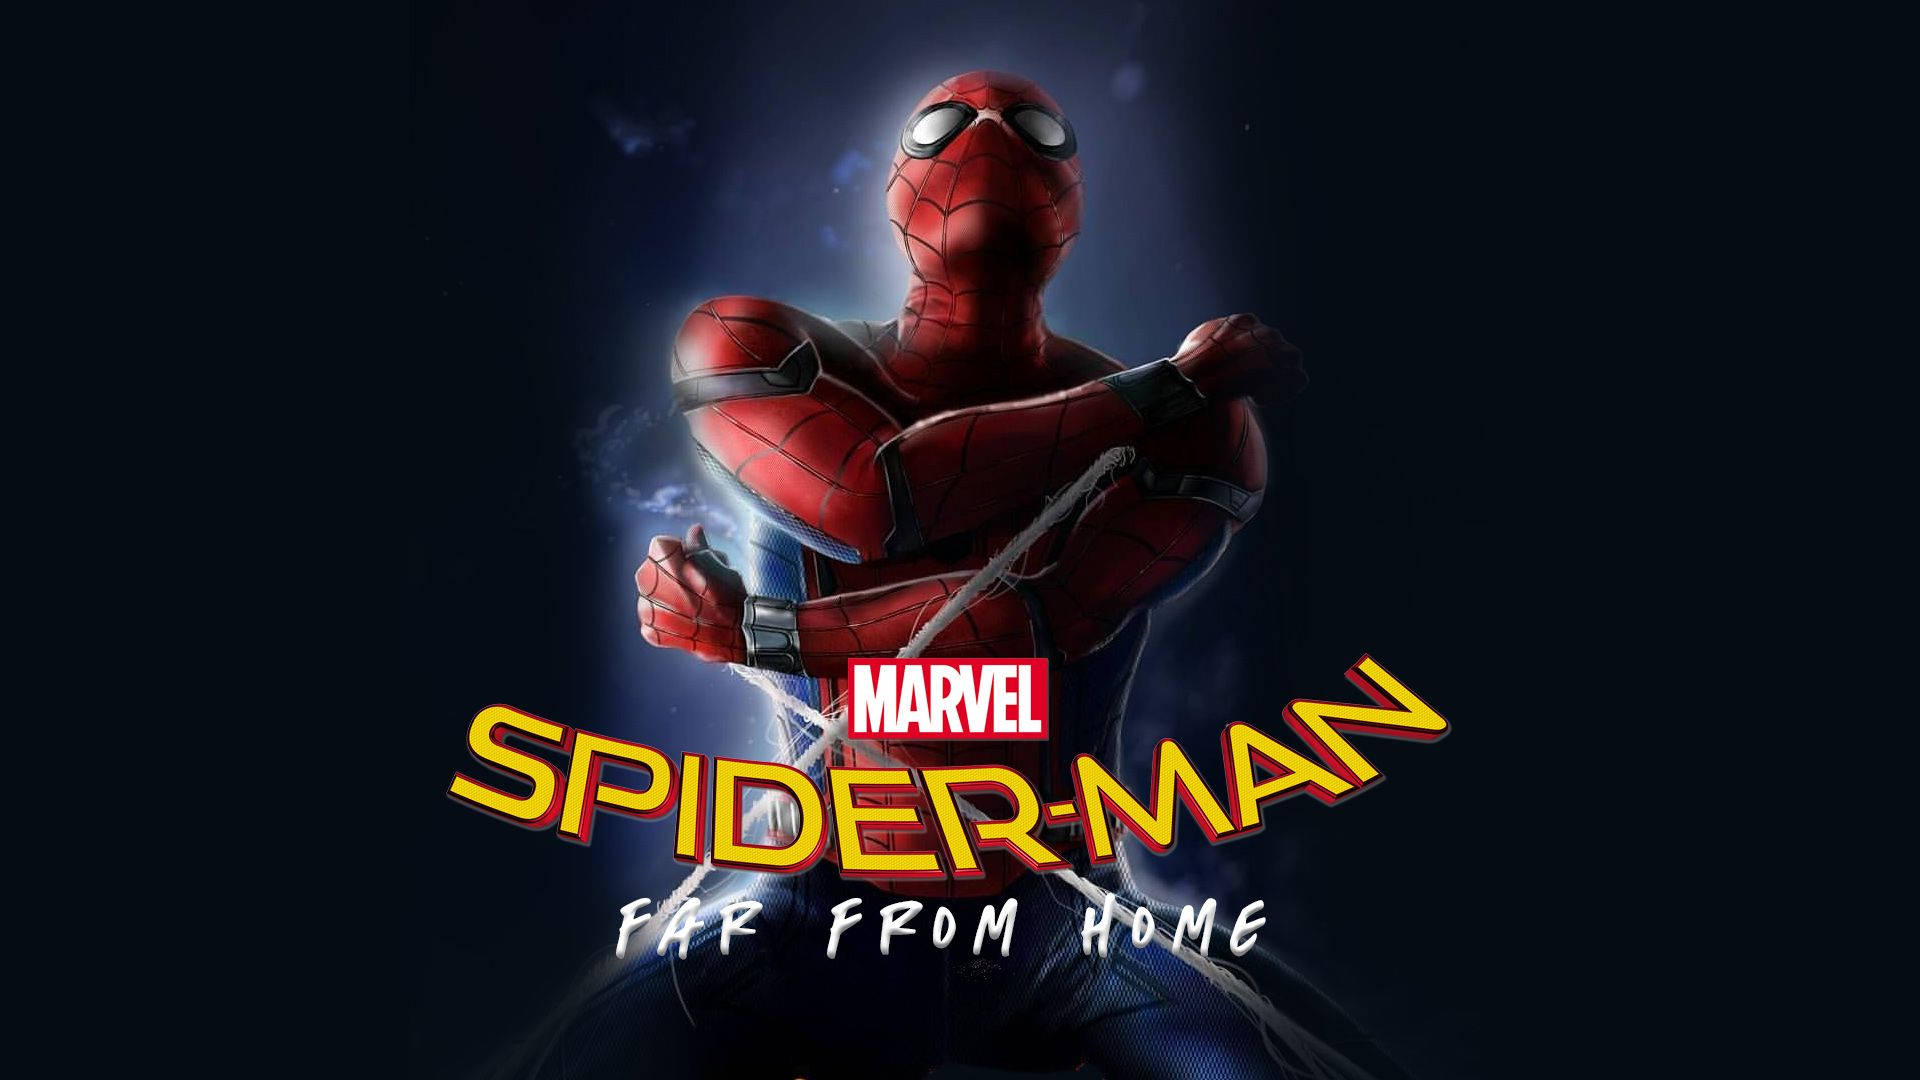 Spiderman Far From Home Wallpaper đã sẵn sàng đón chào bạn! Với chất lượng hình ảnh hoàn thiện, đẹp mắt, màu sắc sống động, sự xuất hiện của siêu anh hùng Spiderman chắc chắn sẽ khiến bạn phải ngước nhìn và cảm thấy hào hứng với bộ phim này đấy!